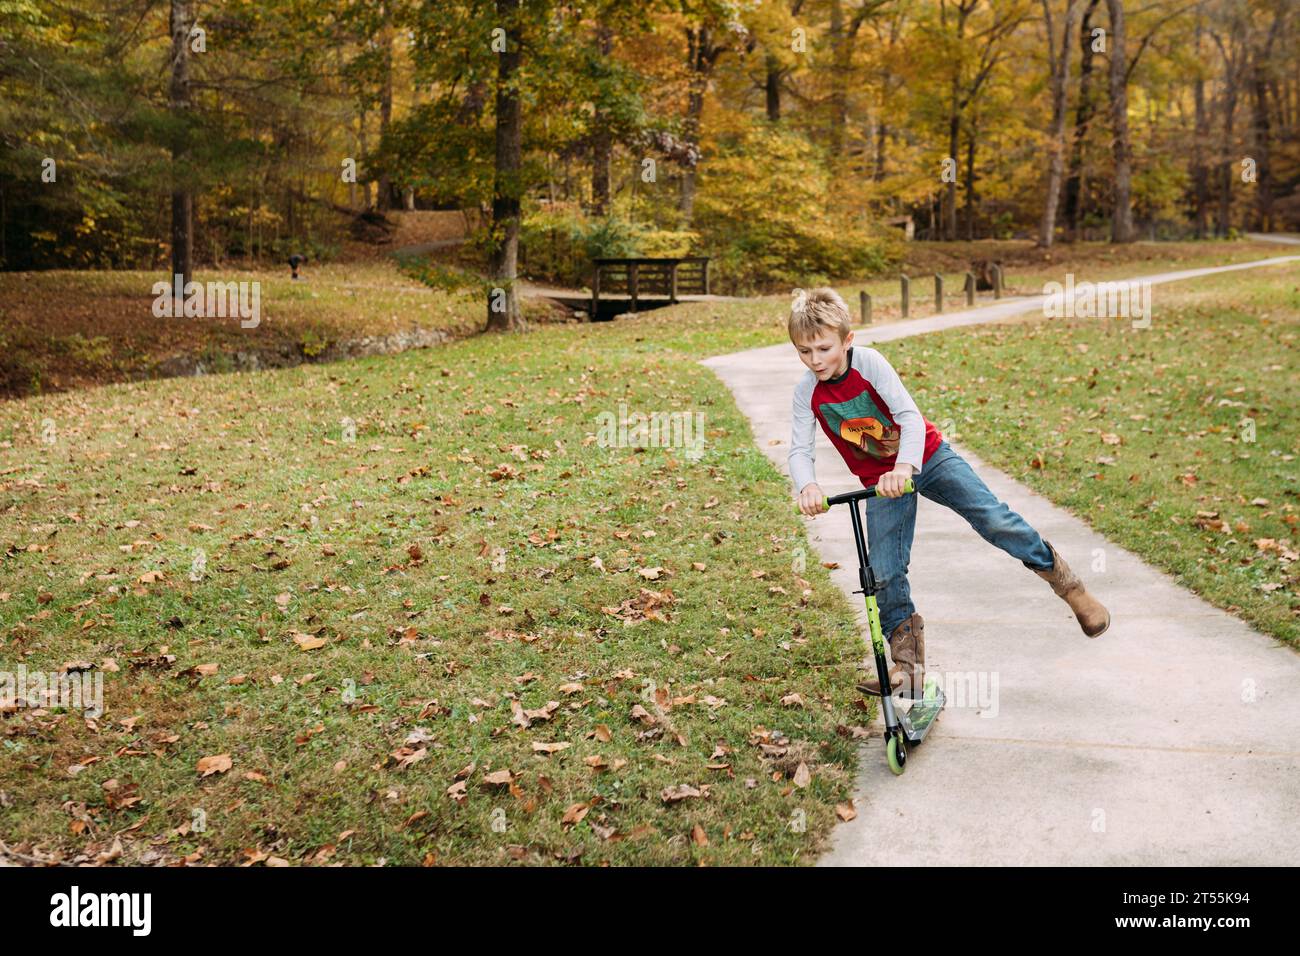 Junge, der im Herbst auf dem Bürgersteig in einem Park fährt Stockfoto